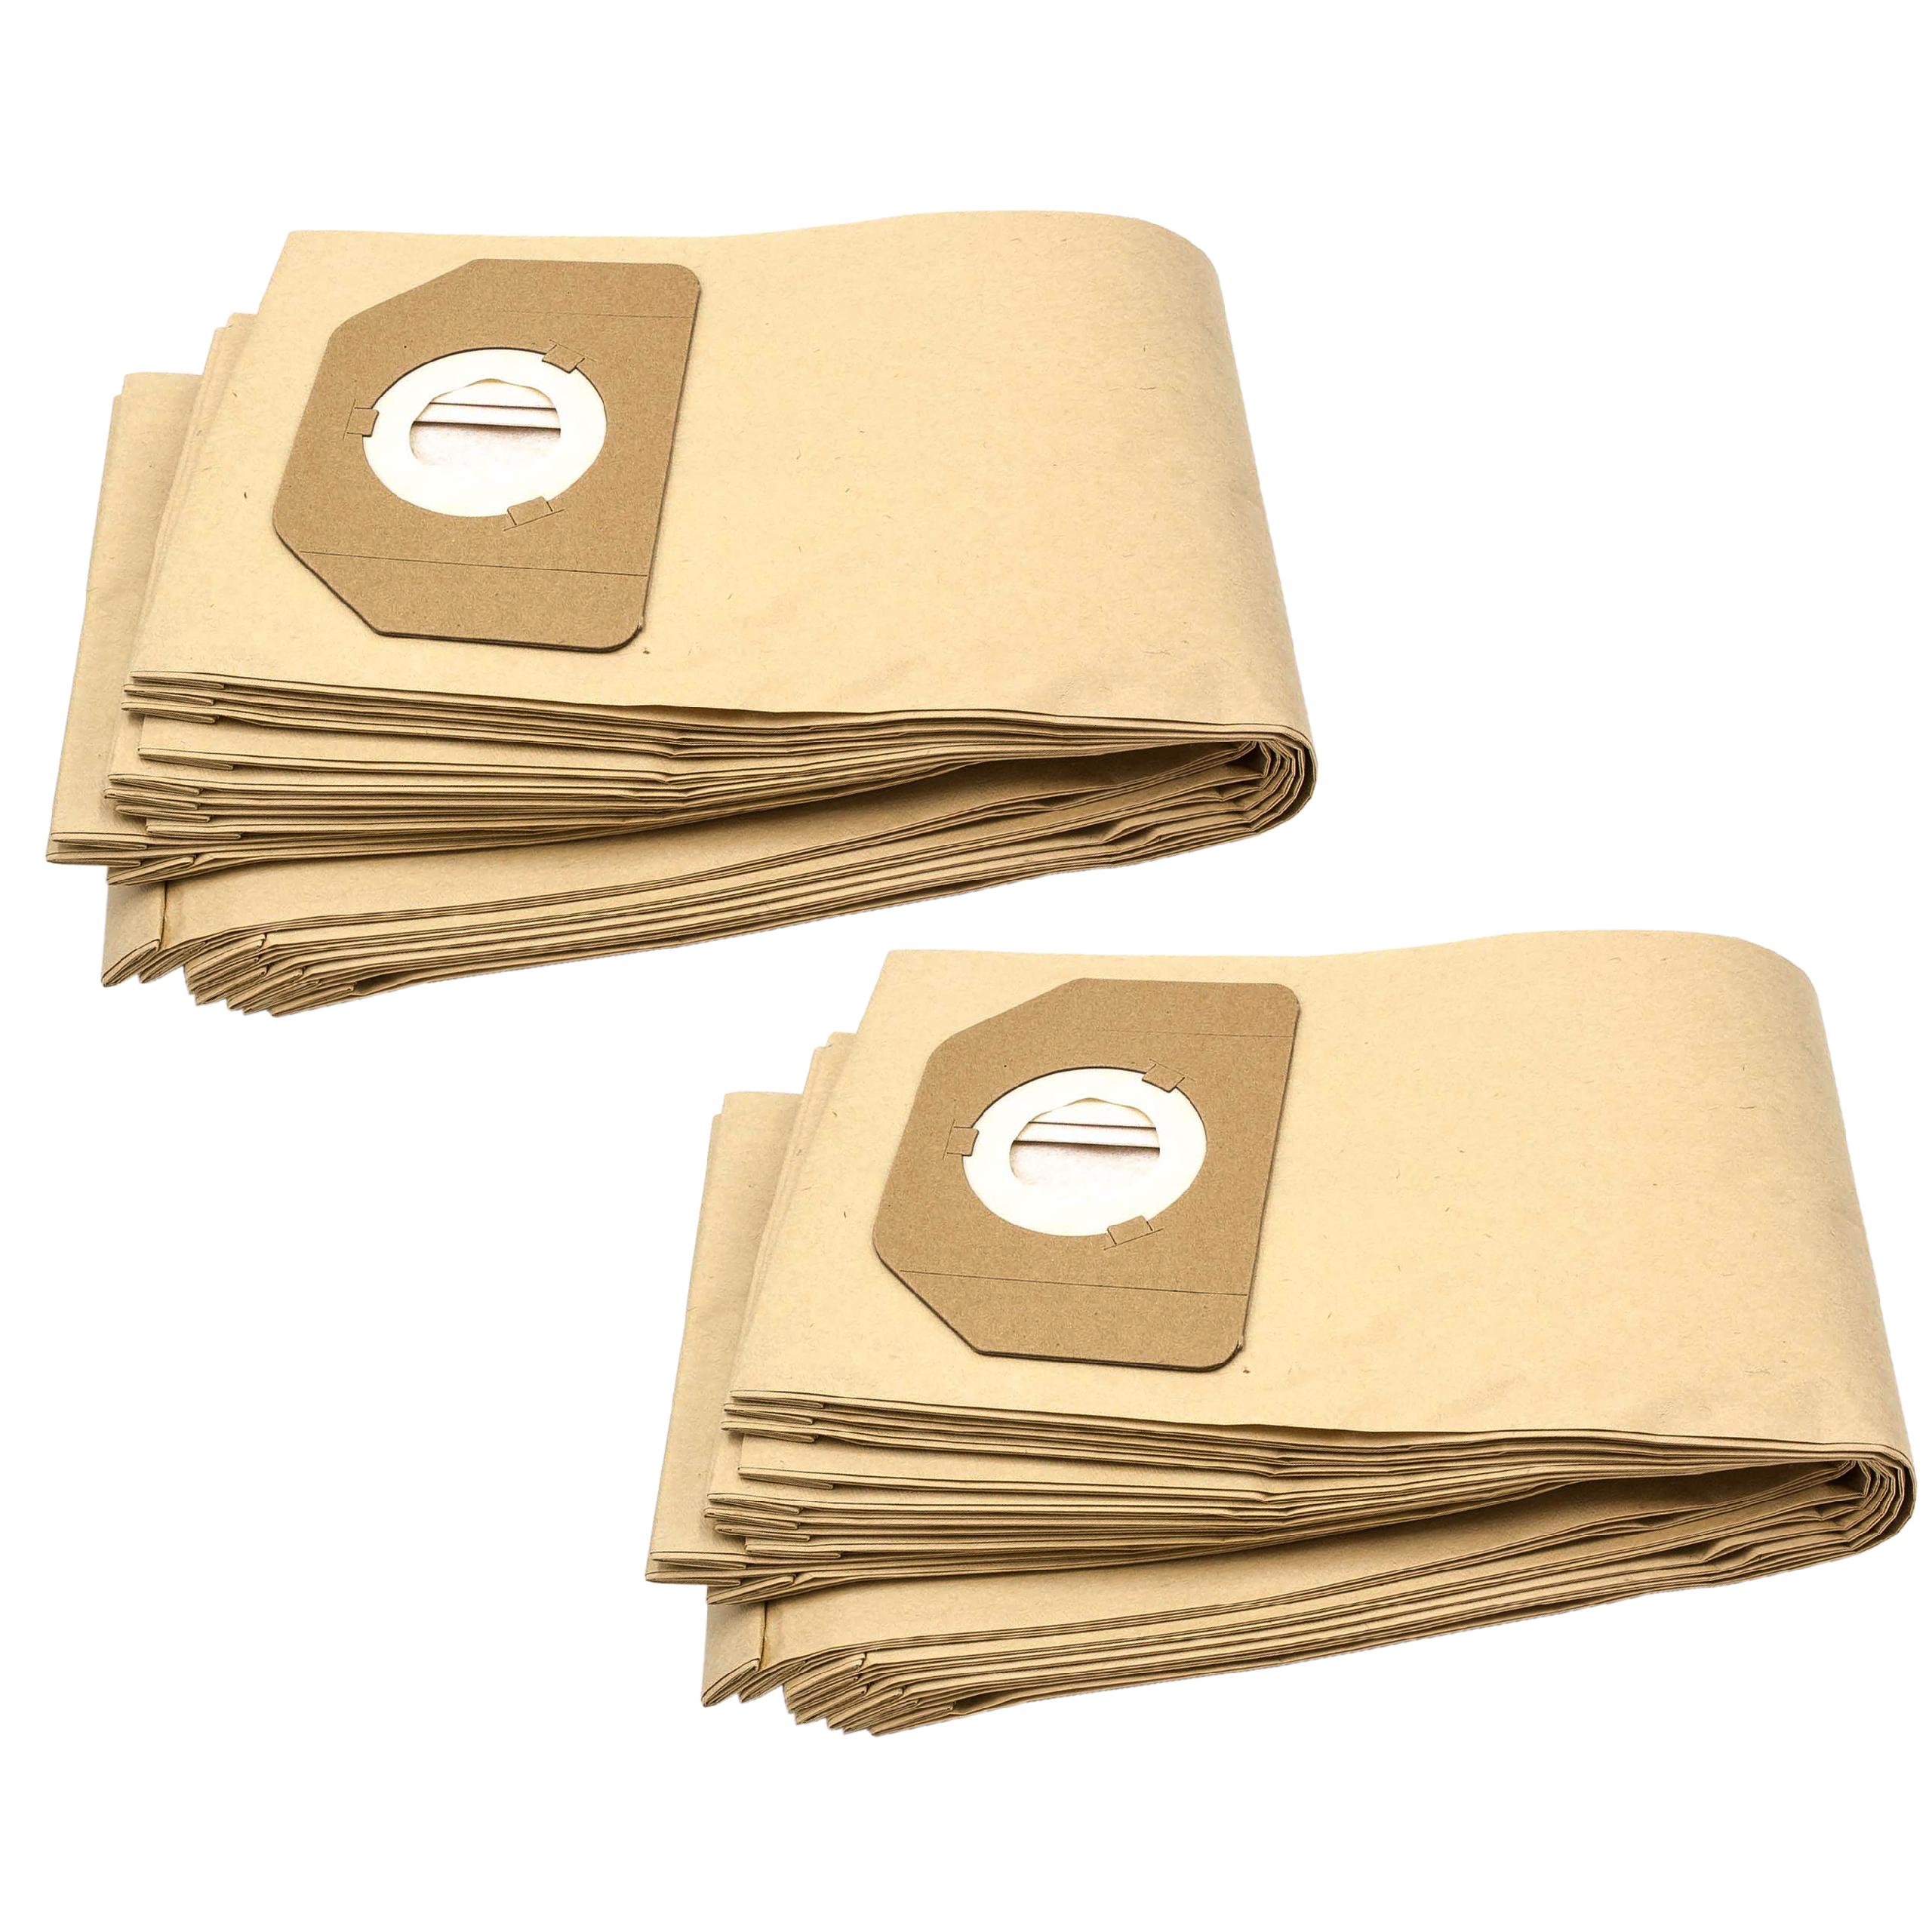 Vhbw 20x sacs compatible avec Rowenta RU 100 / RU100, RU 11 / RU11, RU 110  / RU110, RU 12 / RU12 aspirateur - papier, couleur sable